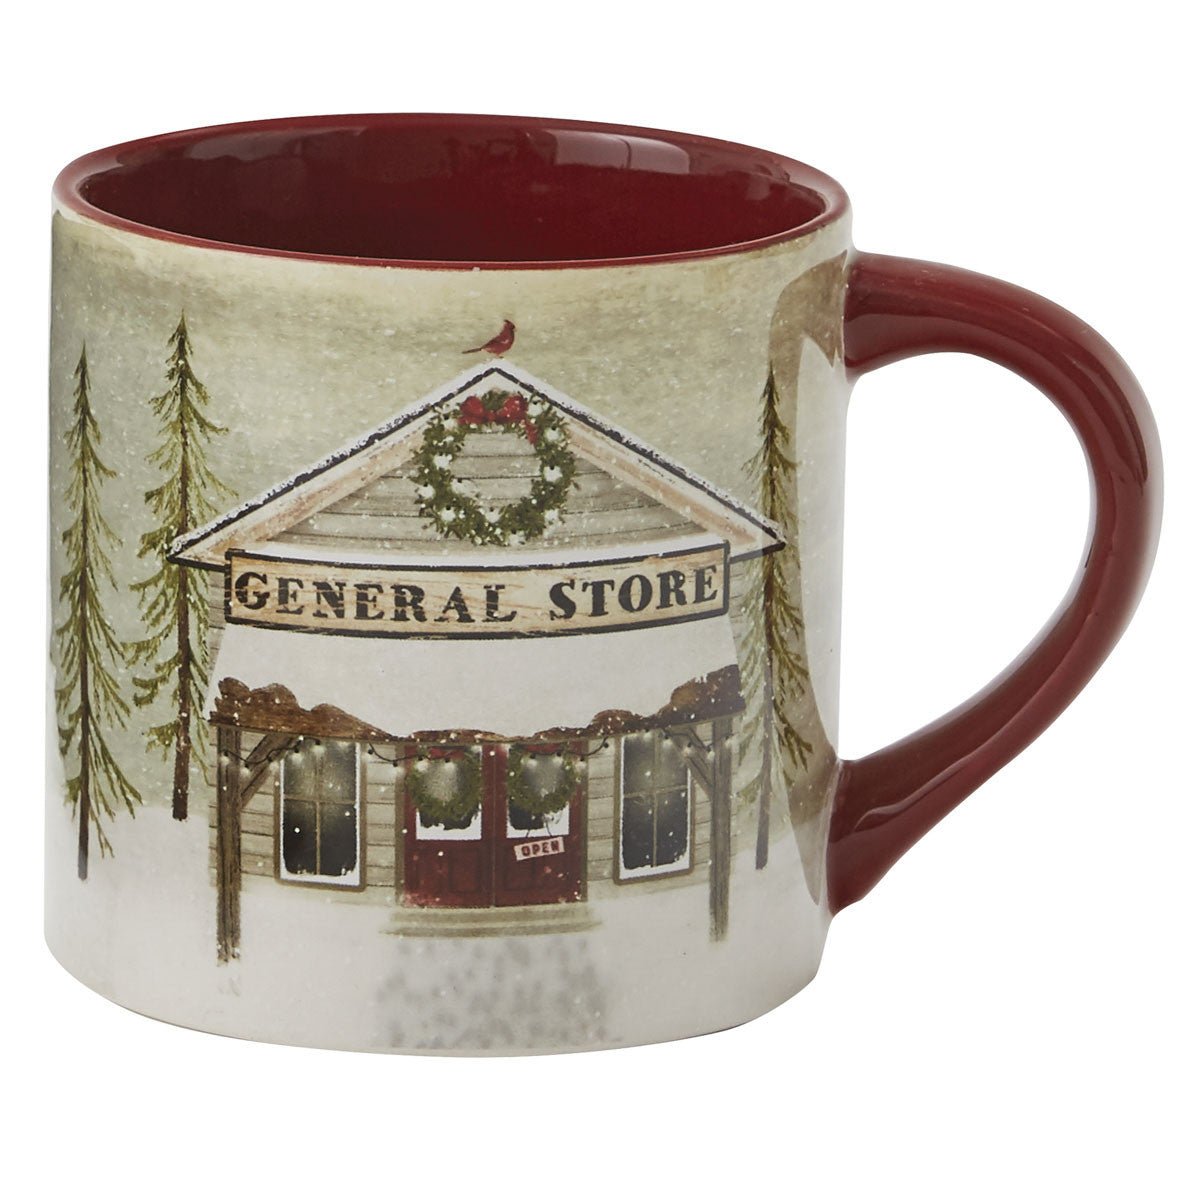 Vintage Hometown Mug Set - 4 - Ozark Cabin Décor, LLC